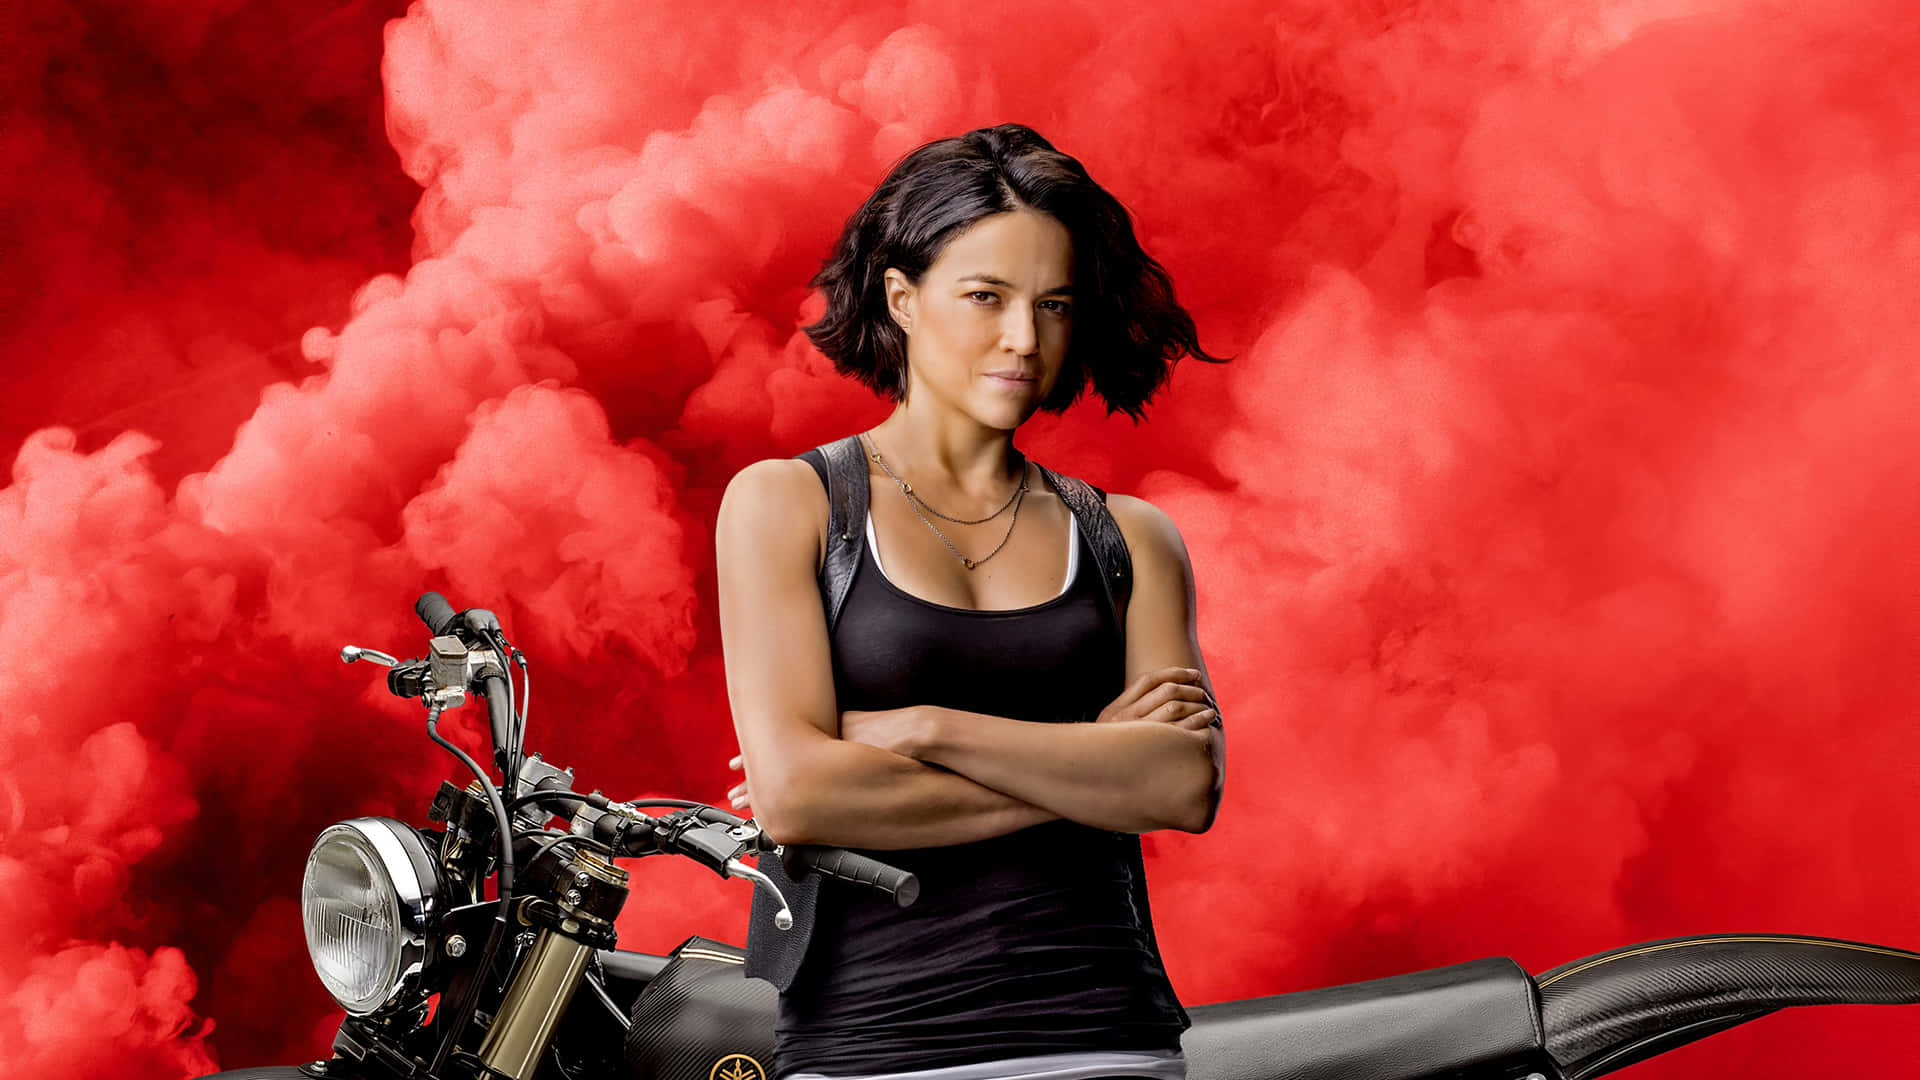 Einefrau Steht Auf Einem Motorrad Und Es Kommt Rauch Heraus. Wallpaper